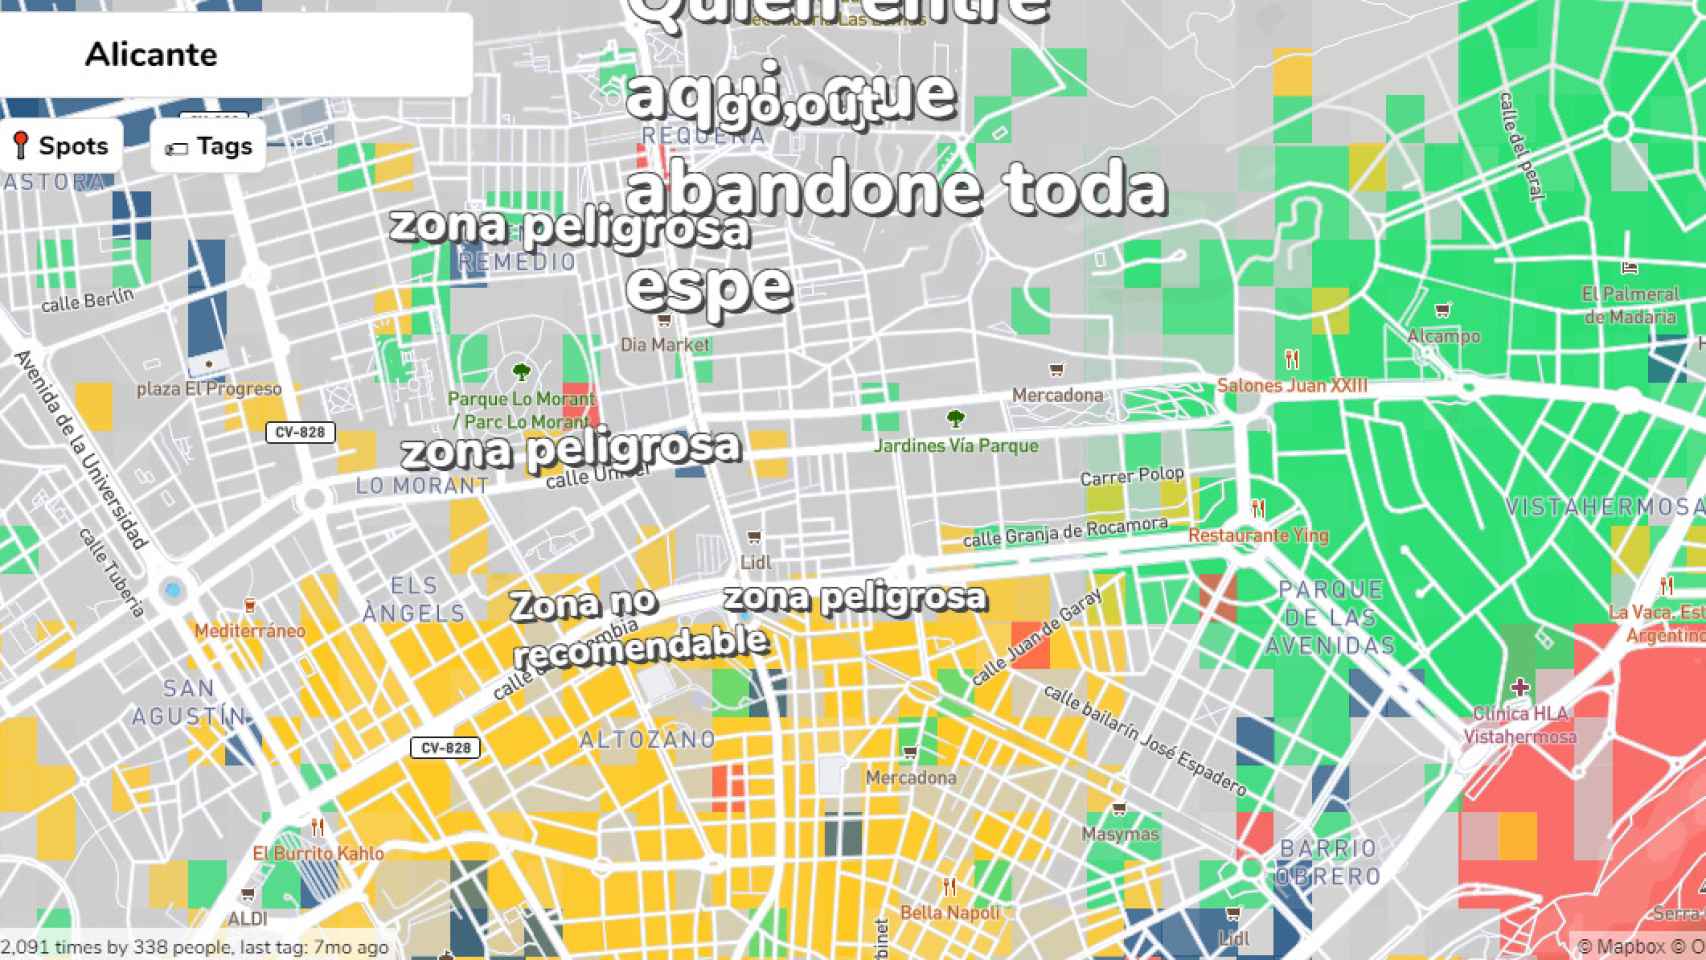 Alicante Neighborhood Map.